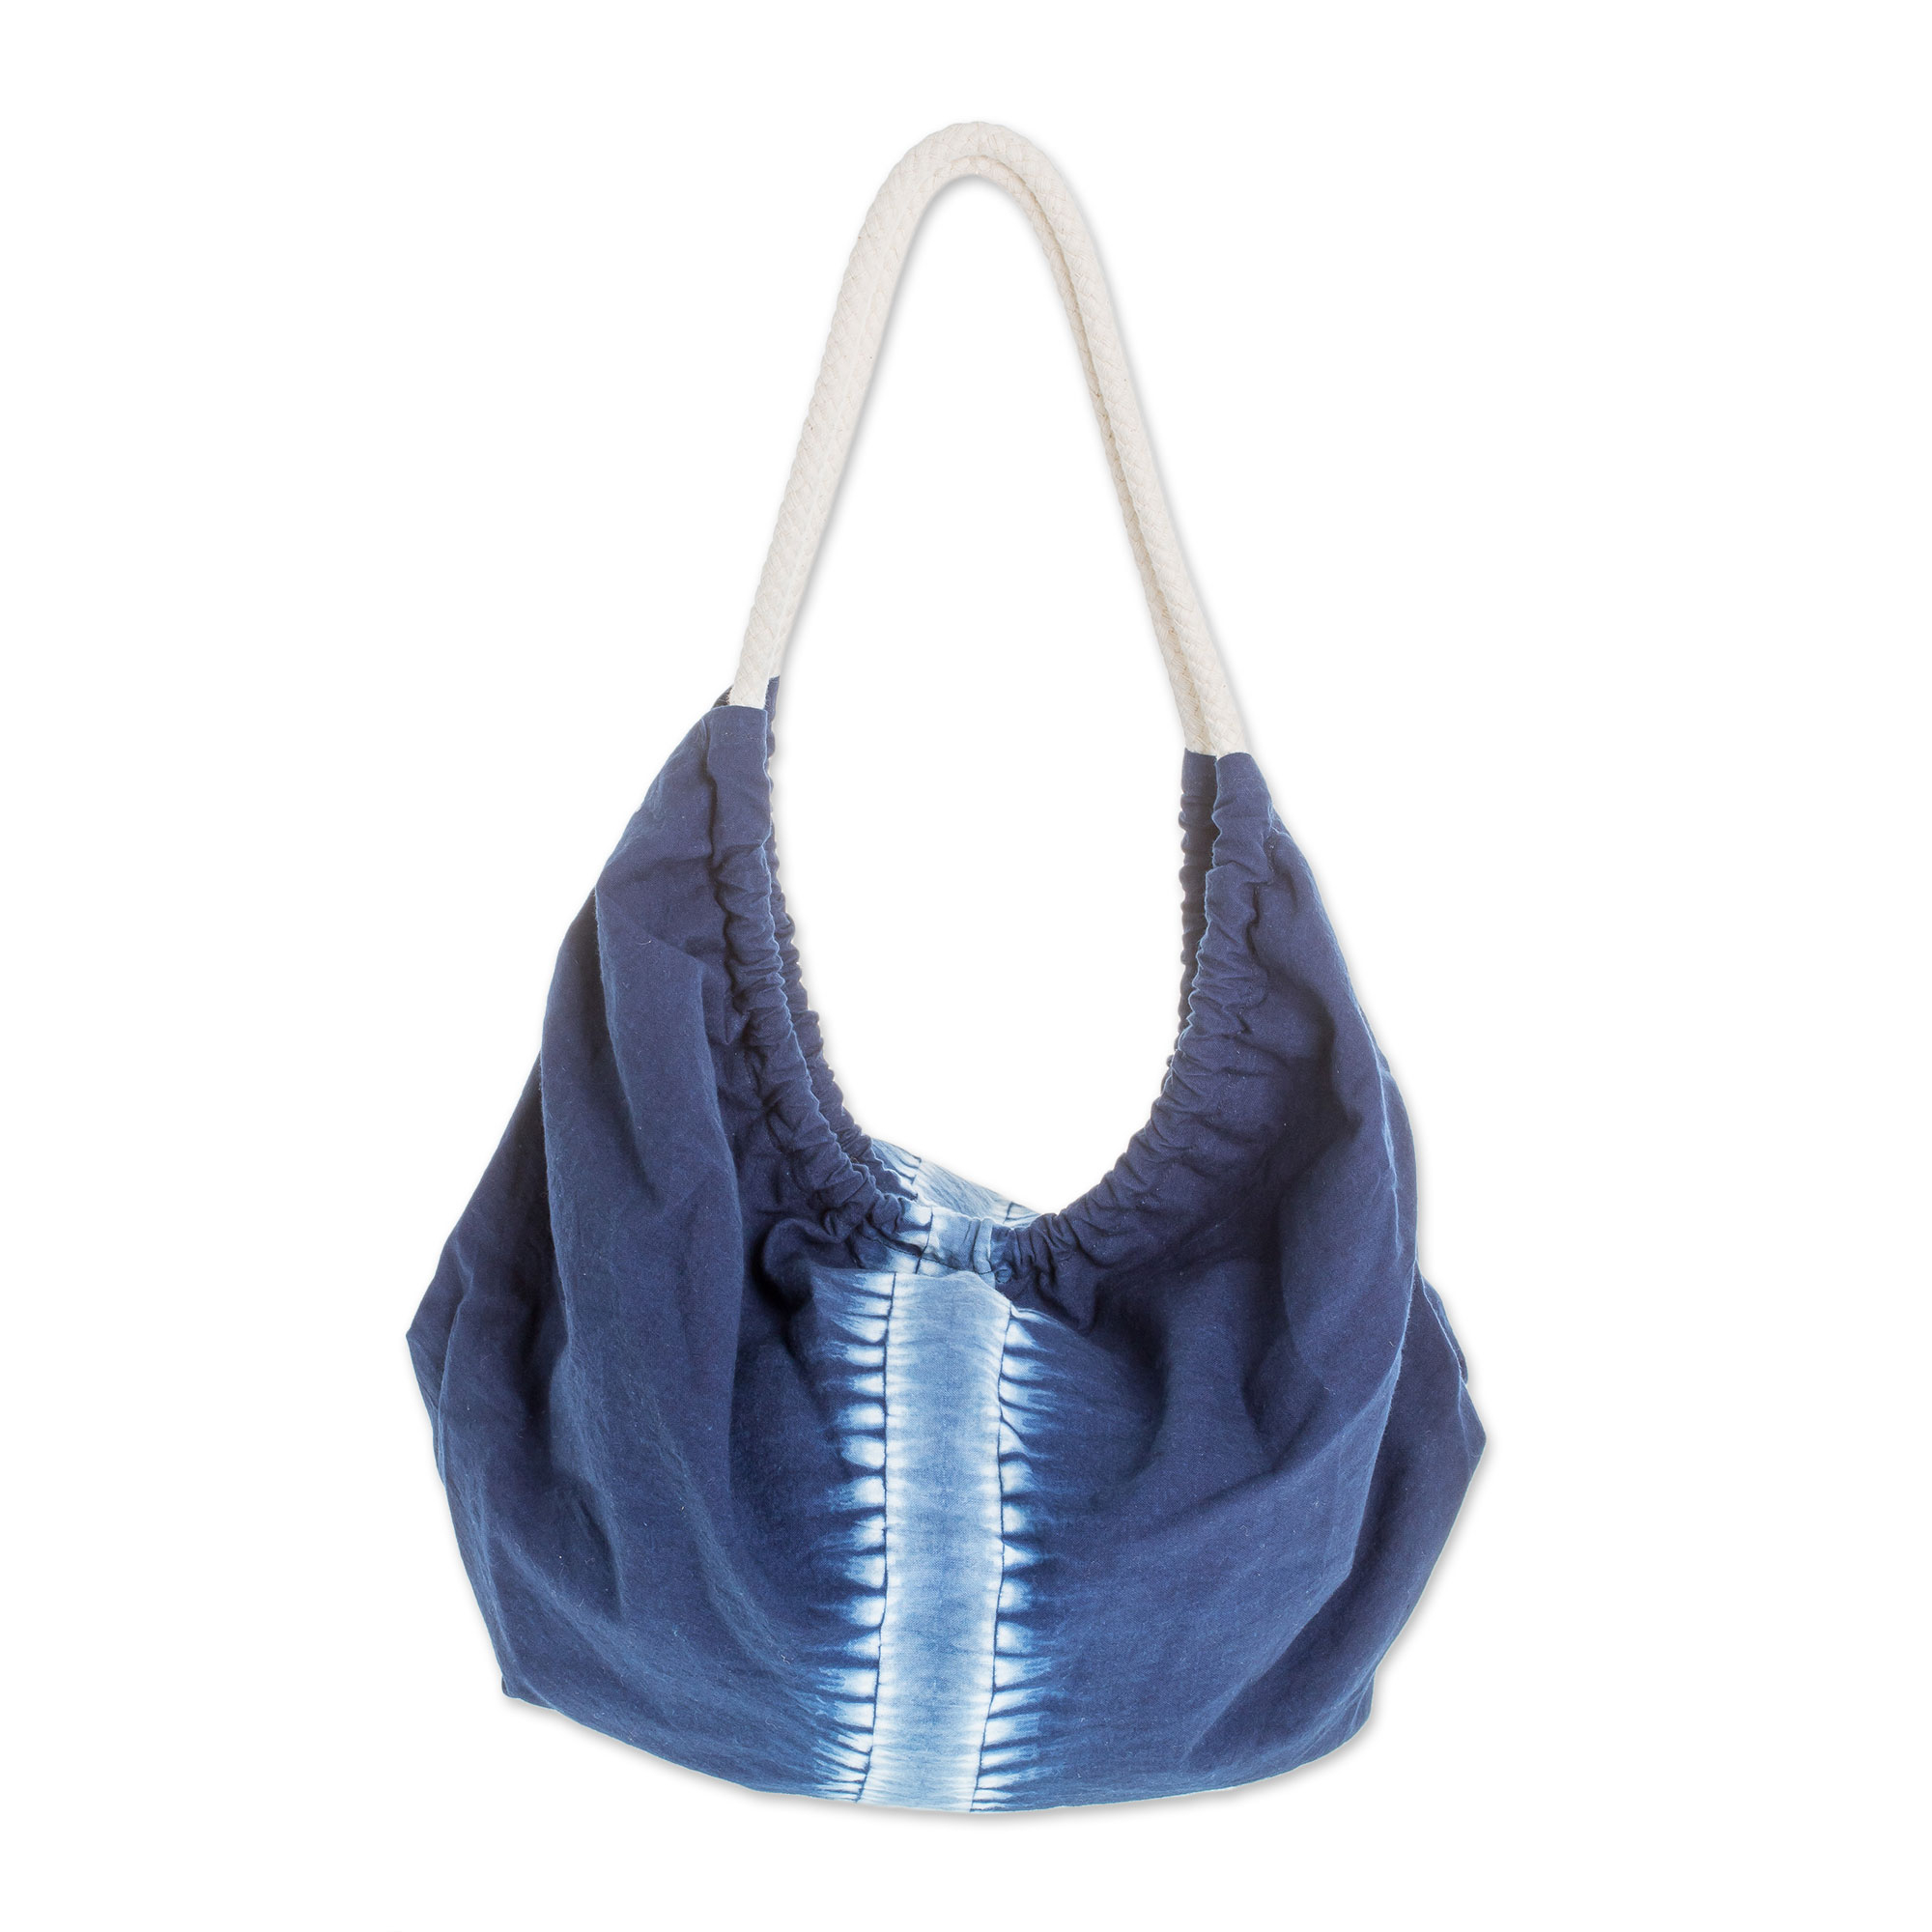 Indigo Tie-Dyed Cotton Hobo Handbag from El Salvador - Indigo Vision ...